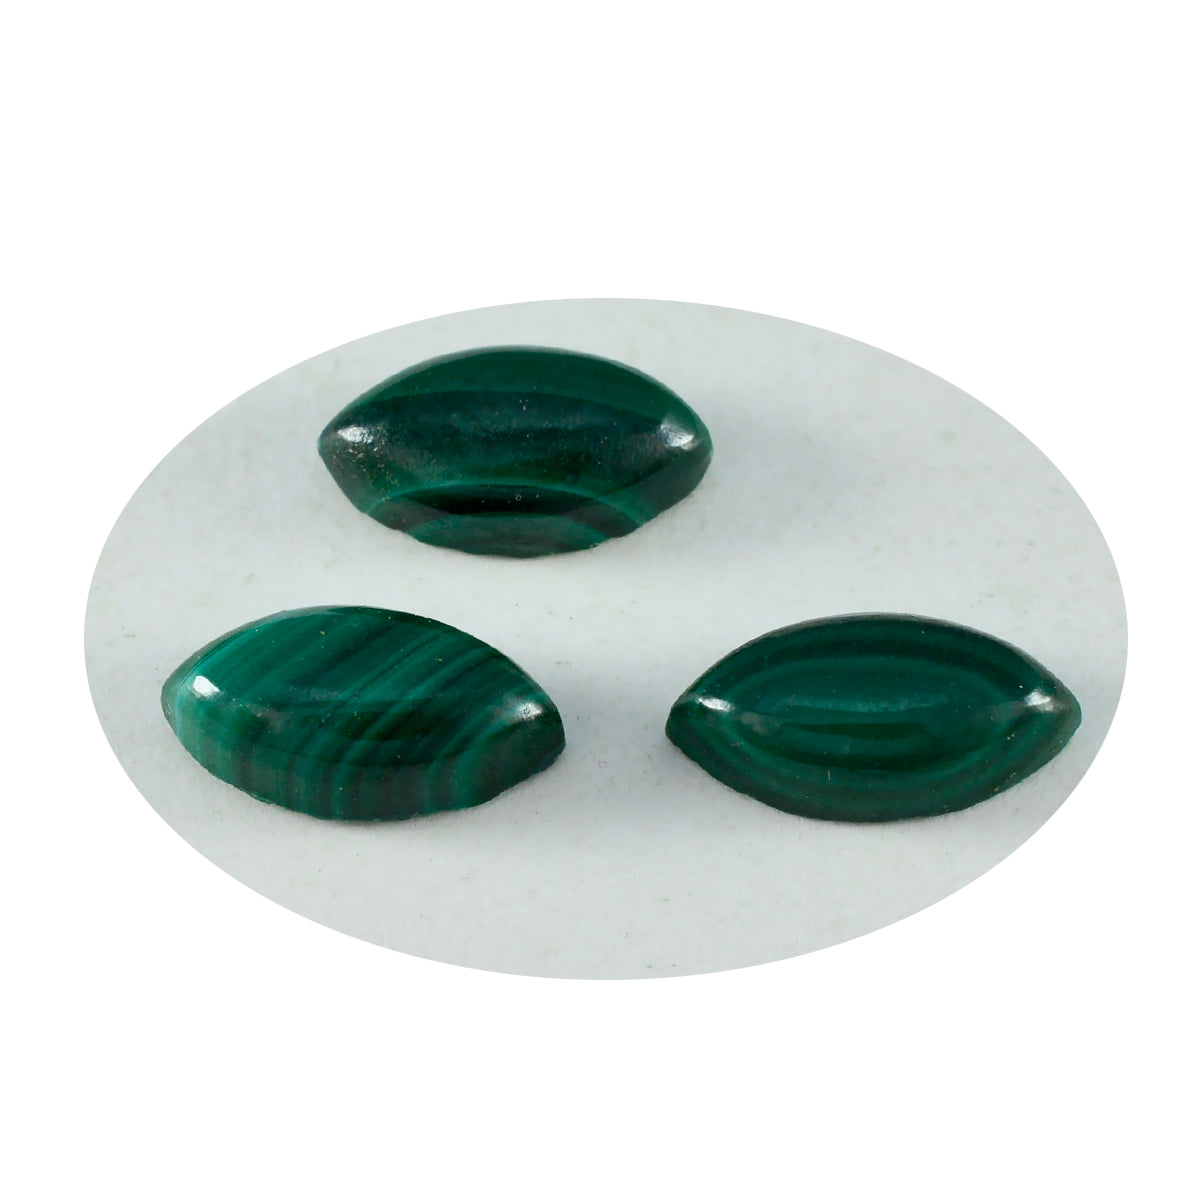 Riyogems 1 Stück grüner Malachit-Cabochon, 7 x 14 mm, Marquise-Form, schöner Qualitätsstein